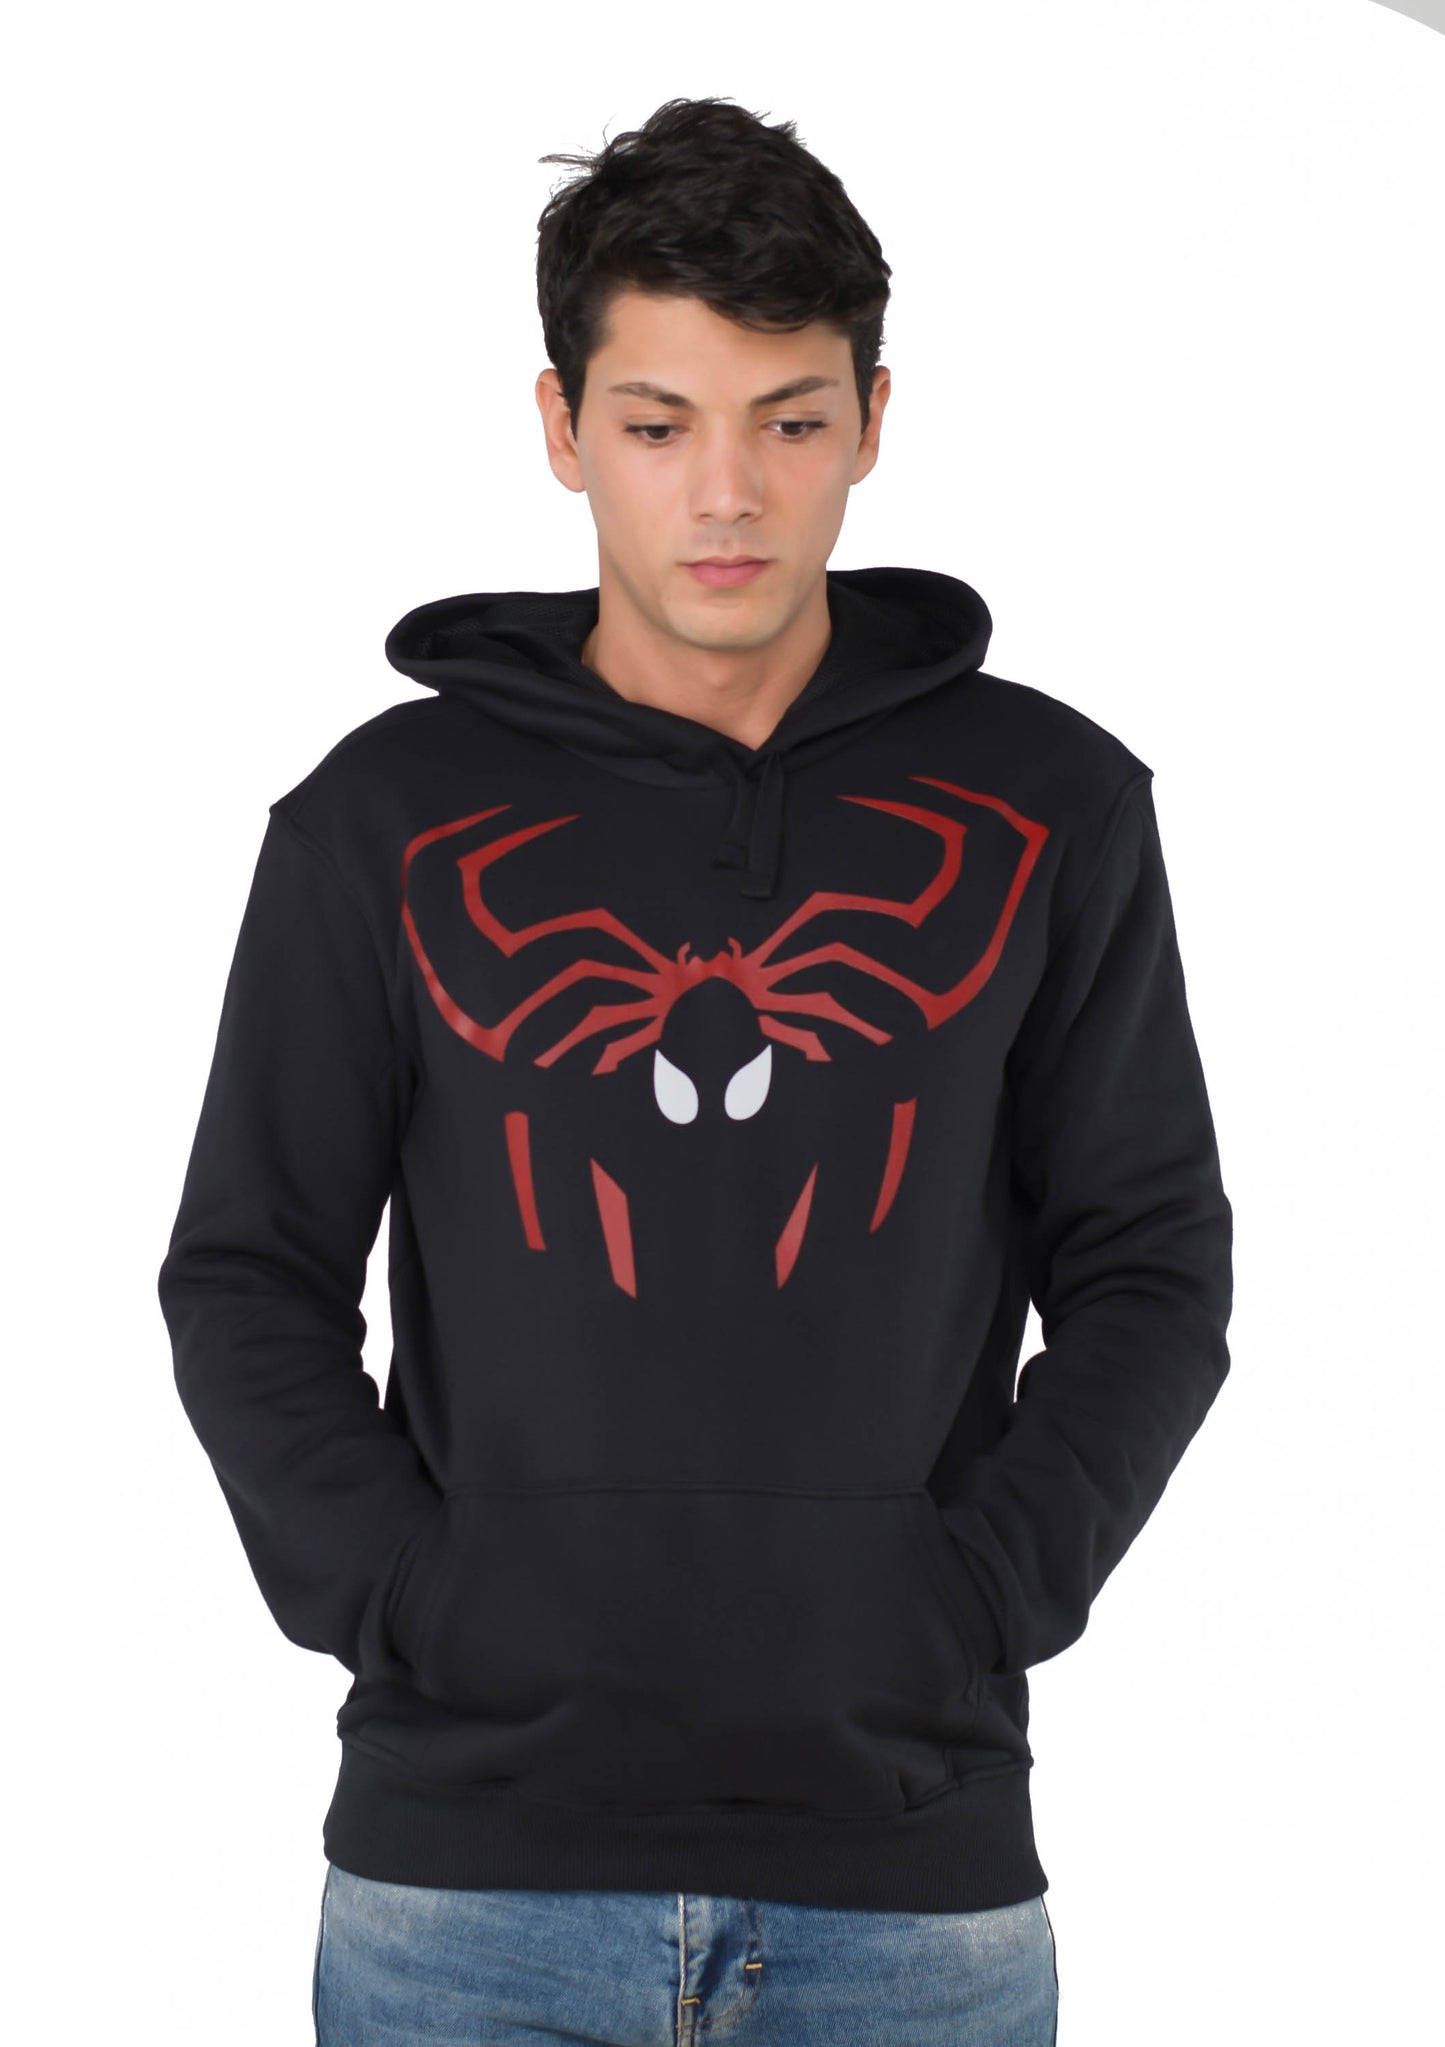 Spiderman Hoodie Sweatshirt